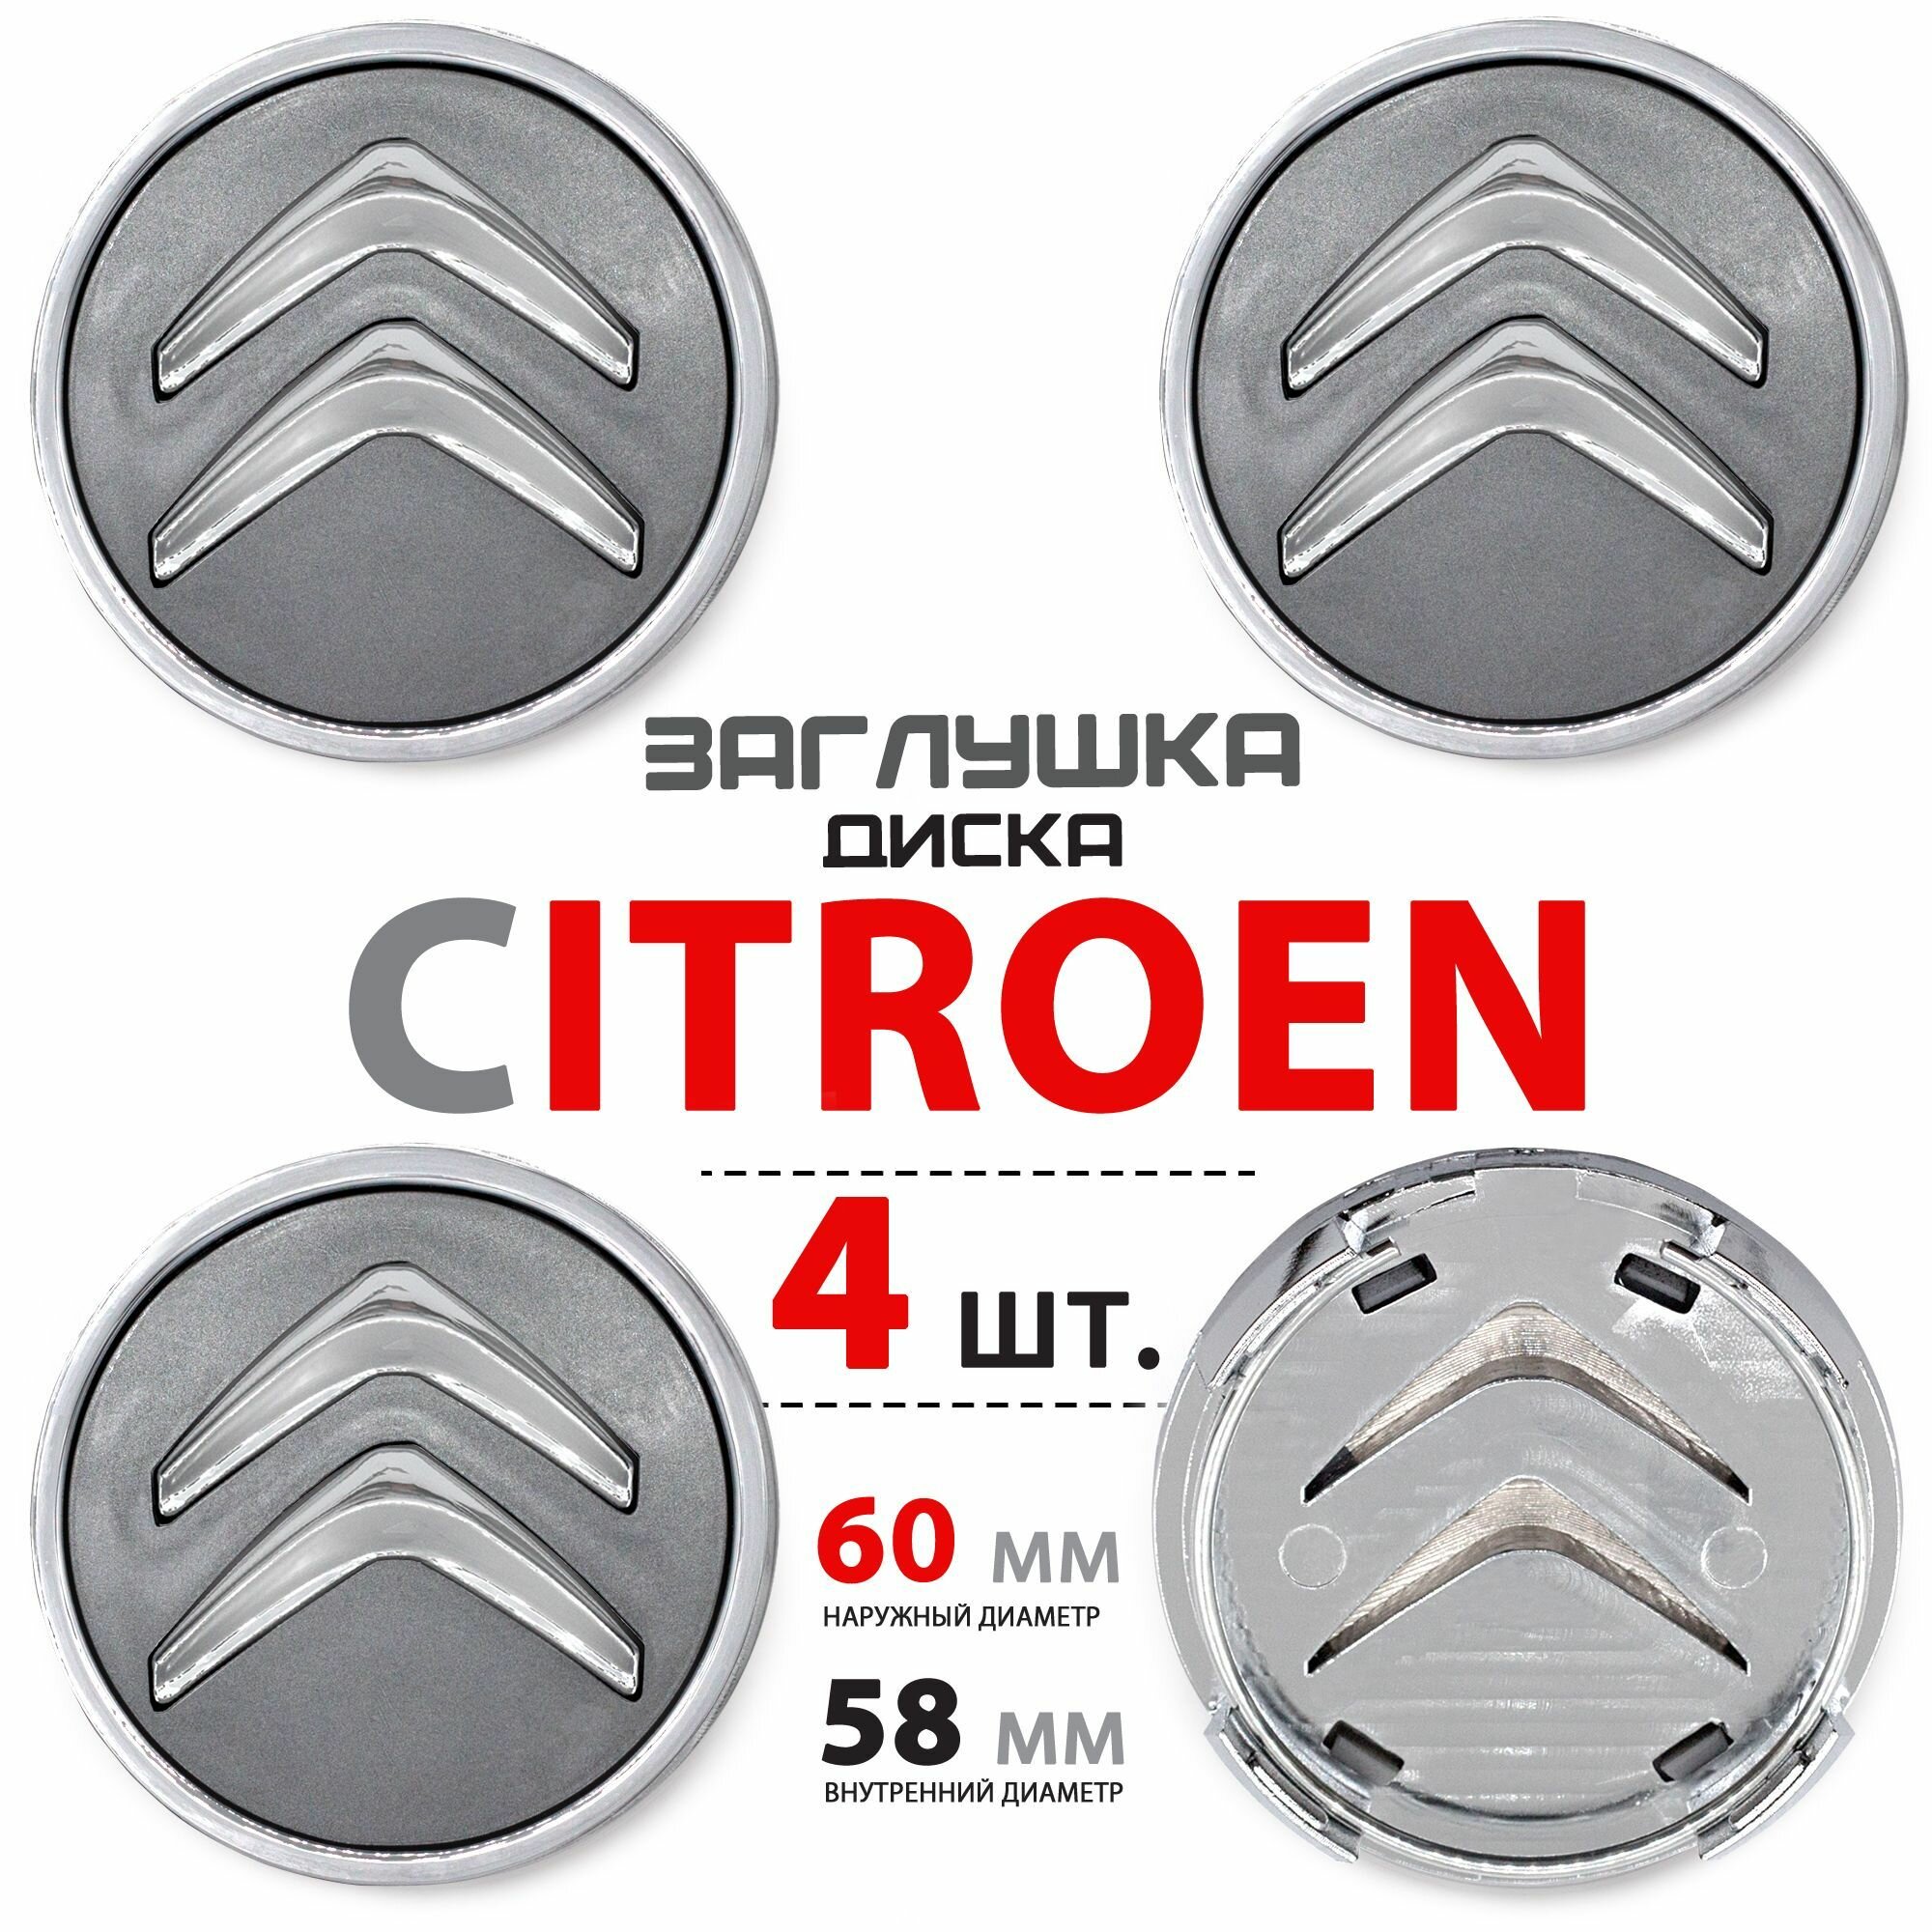 Колпачки заглушки на литой диск колеса для Citroen / Ситроен 60 мм - 4 штуки темно-серые